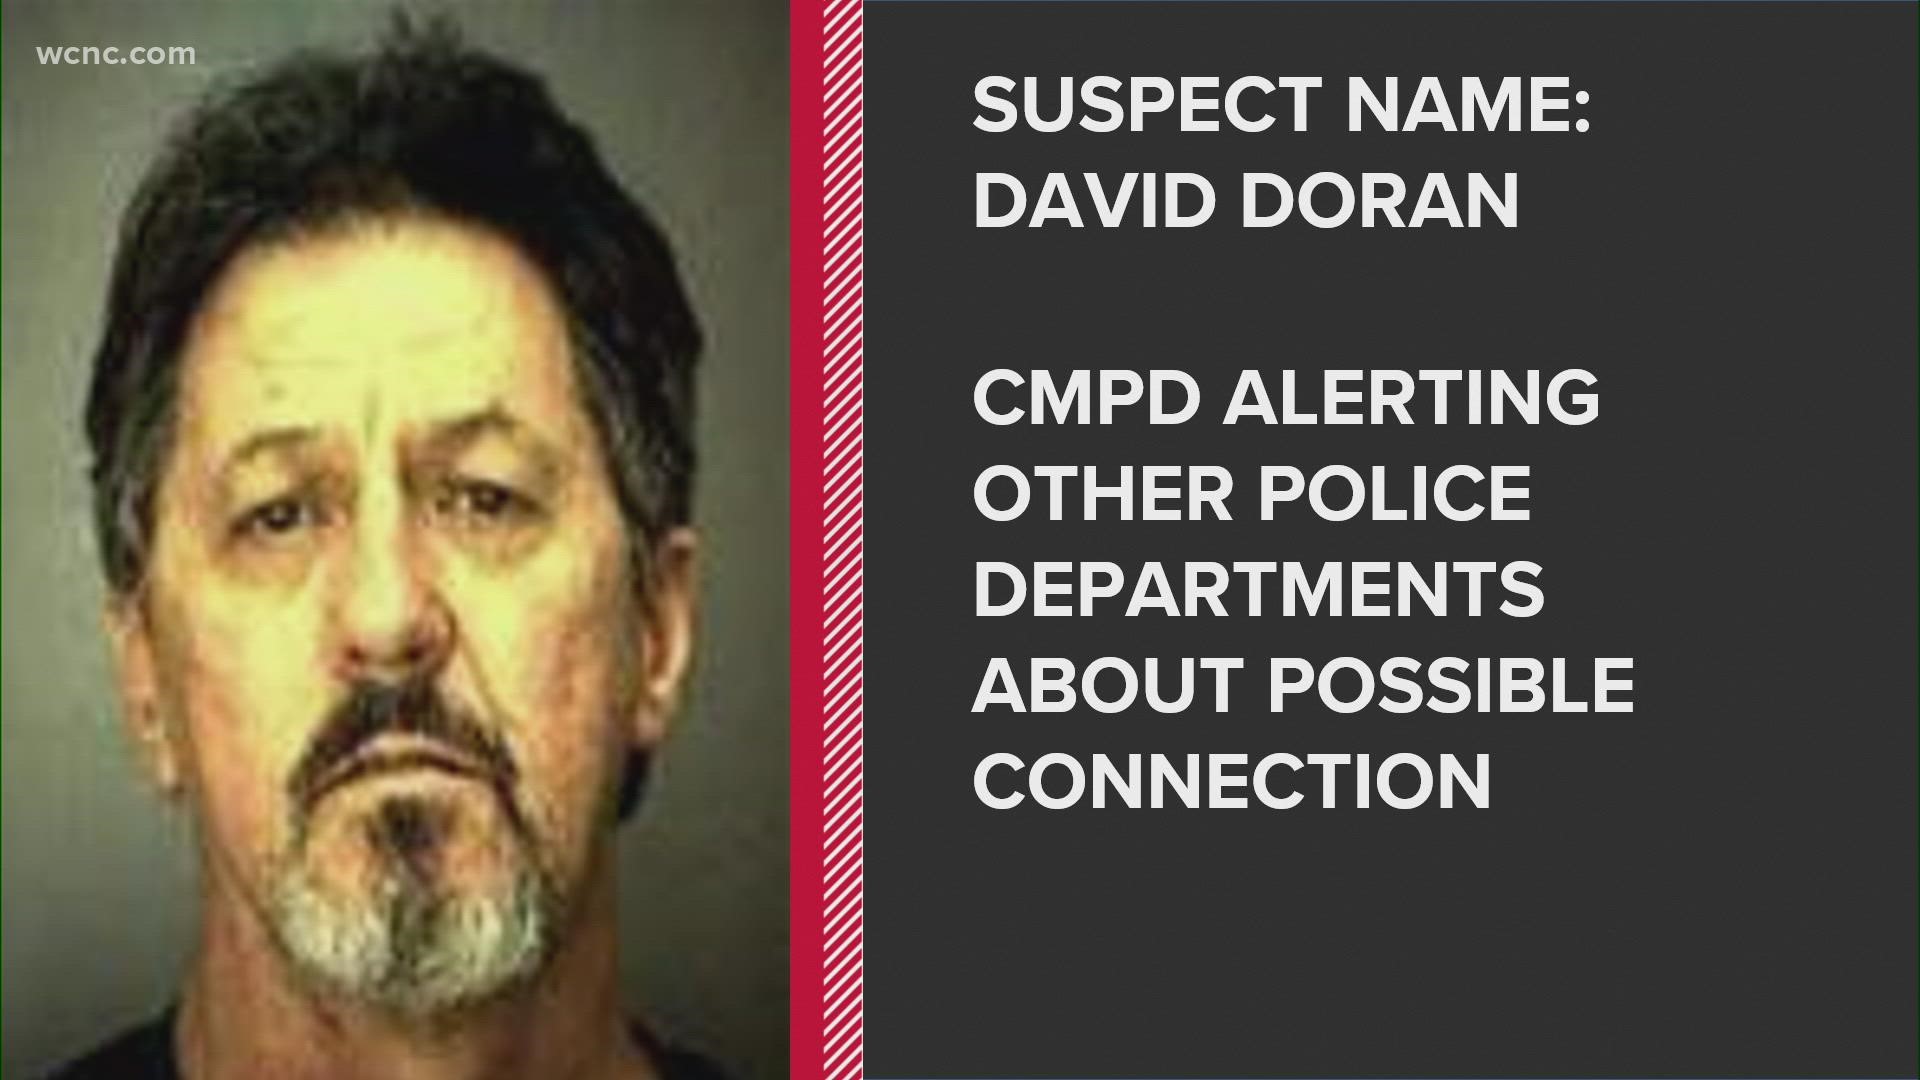 The suspect, David Edward Doran, died on June 24, 2008.